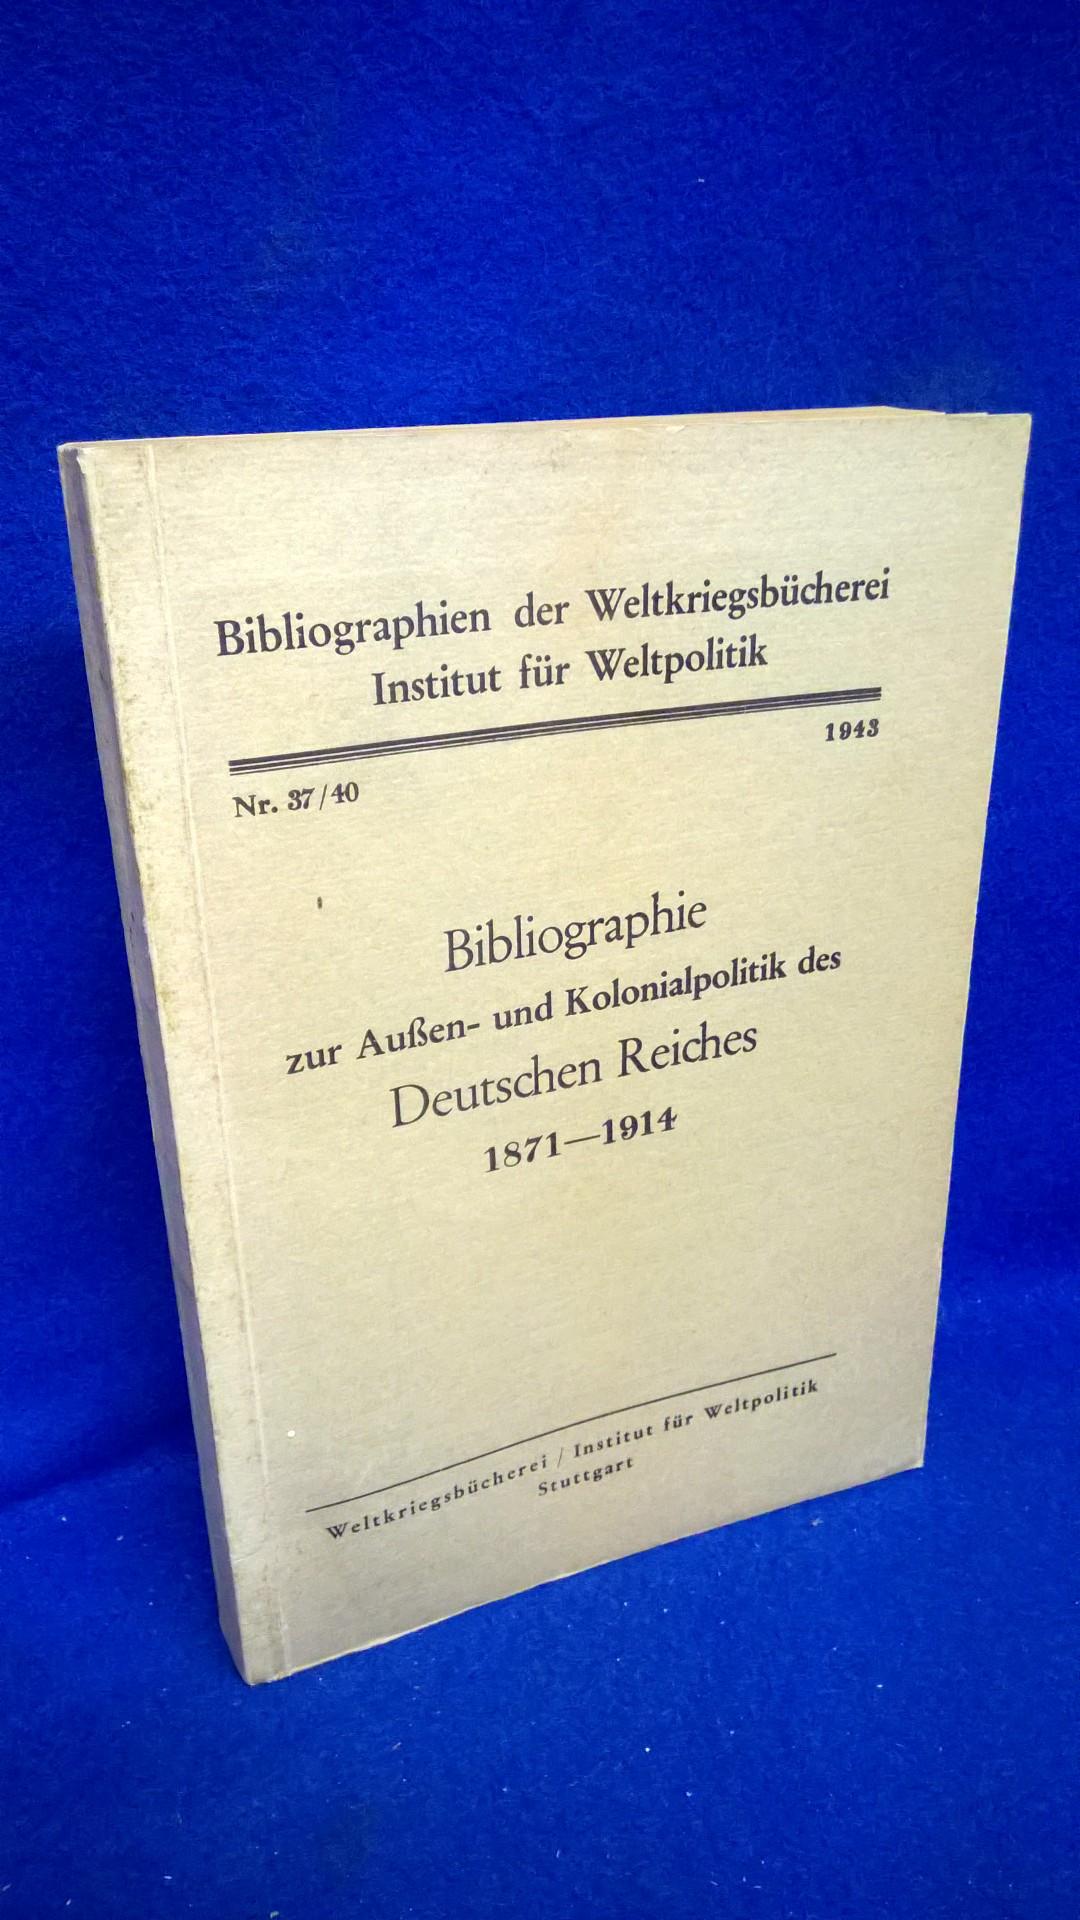 Bibliographie zur Außen- und Kolonialpolitik des Deutschen Reiches 1871-1914.